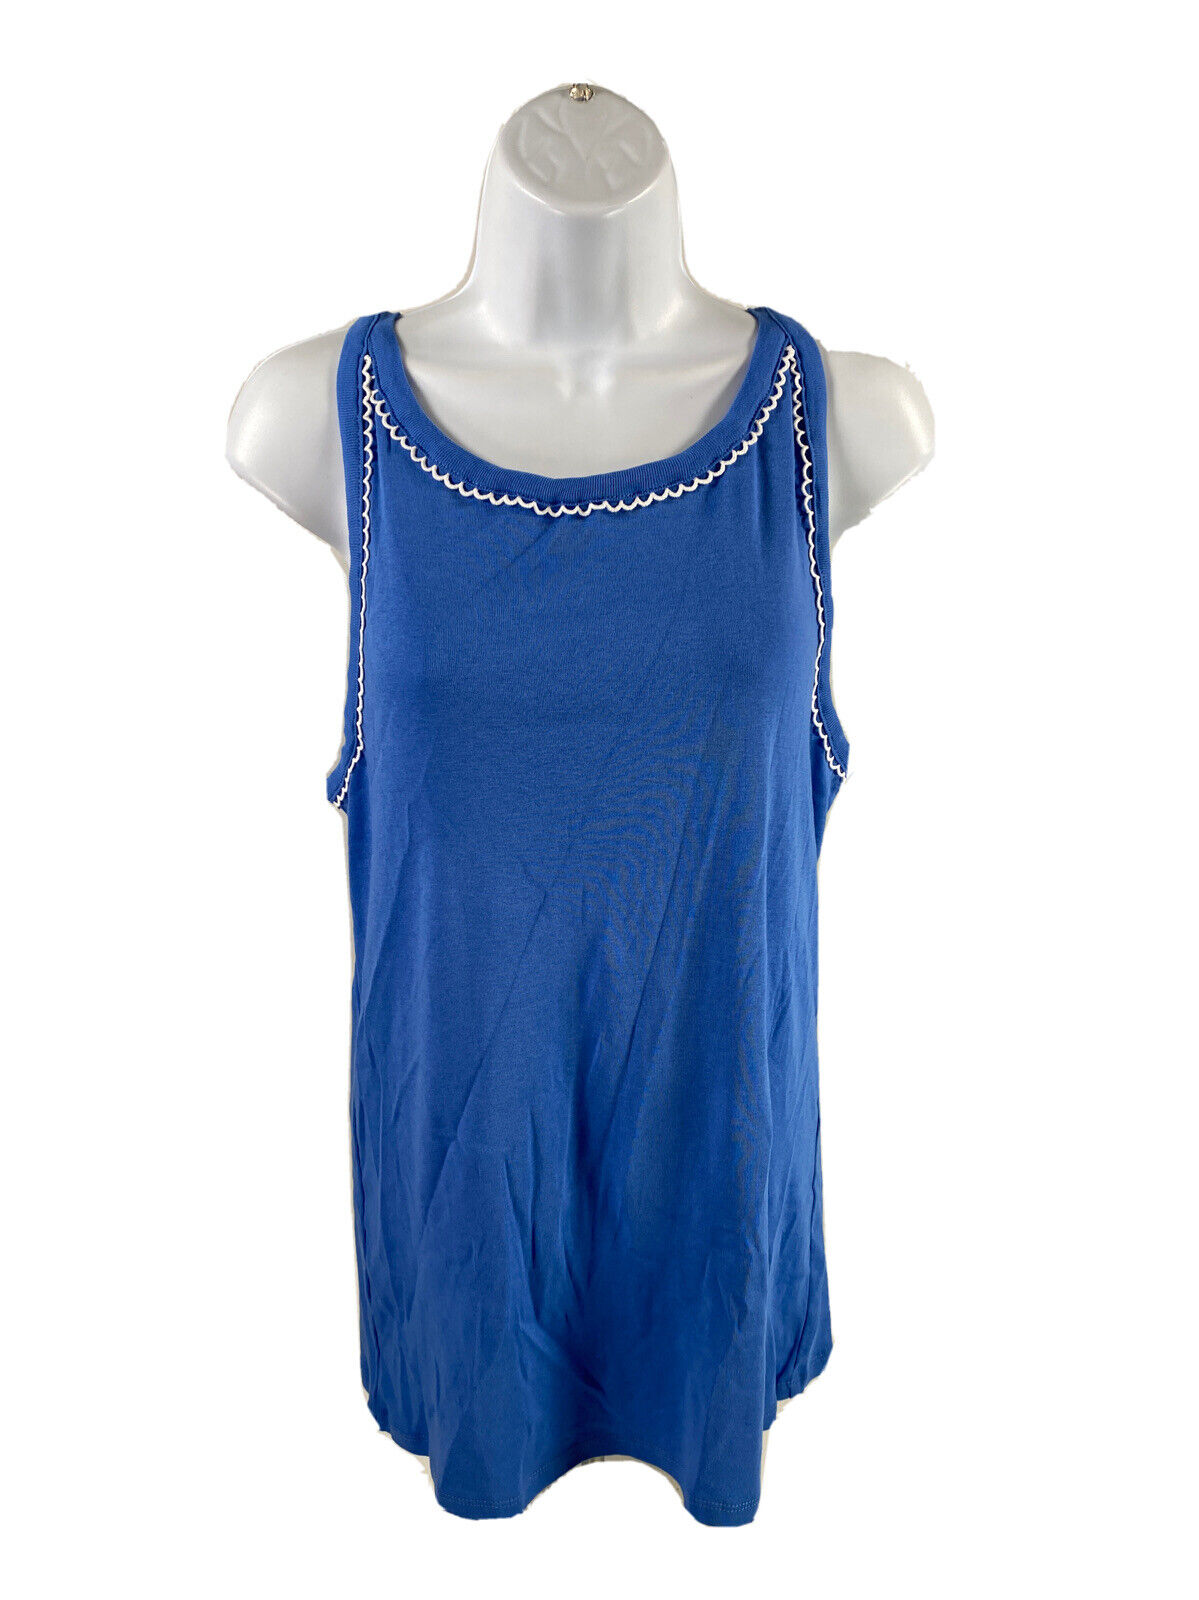 NEW LOFT Women's Blue Cotton Sleeveless Tank Top - XL